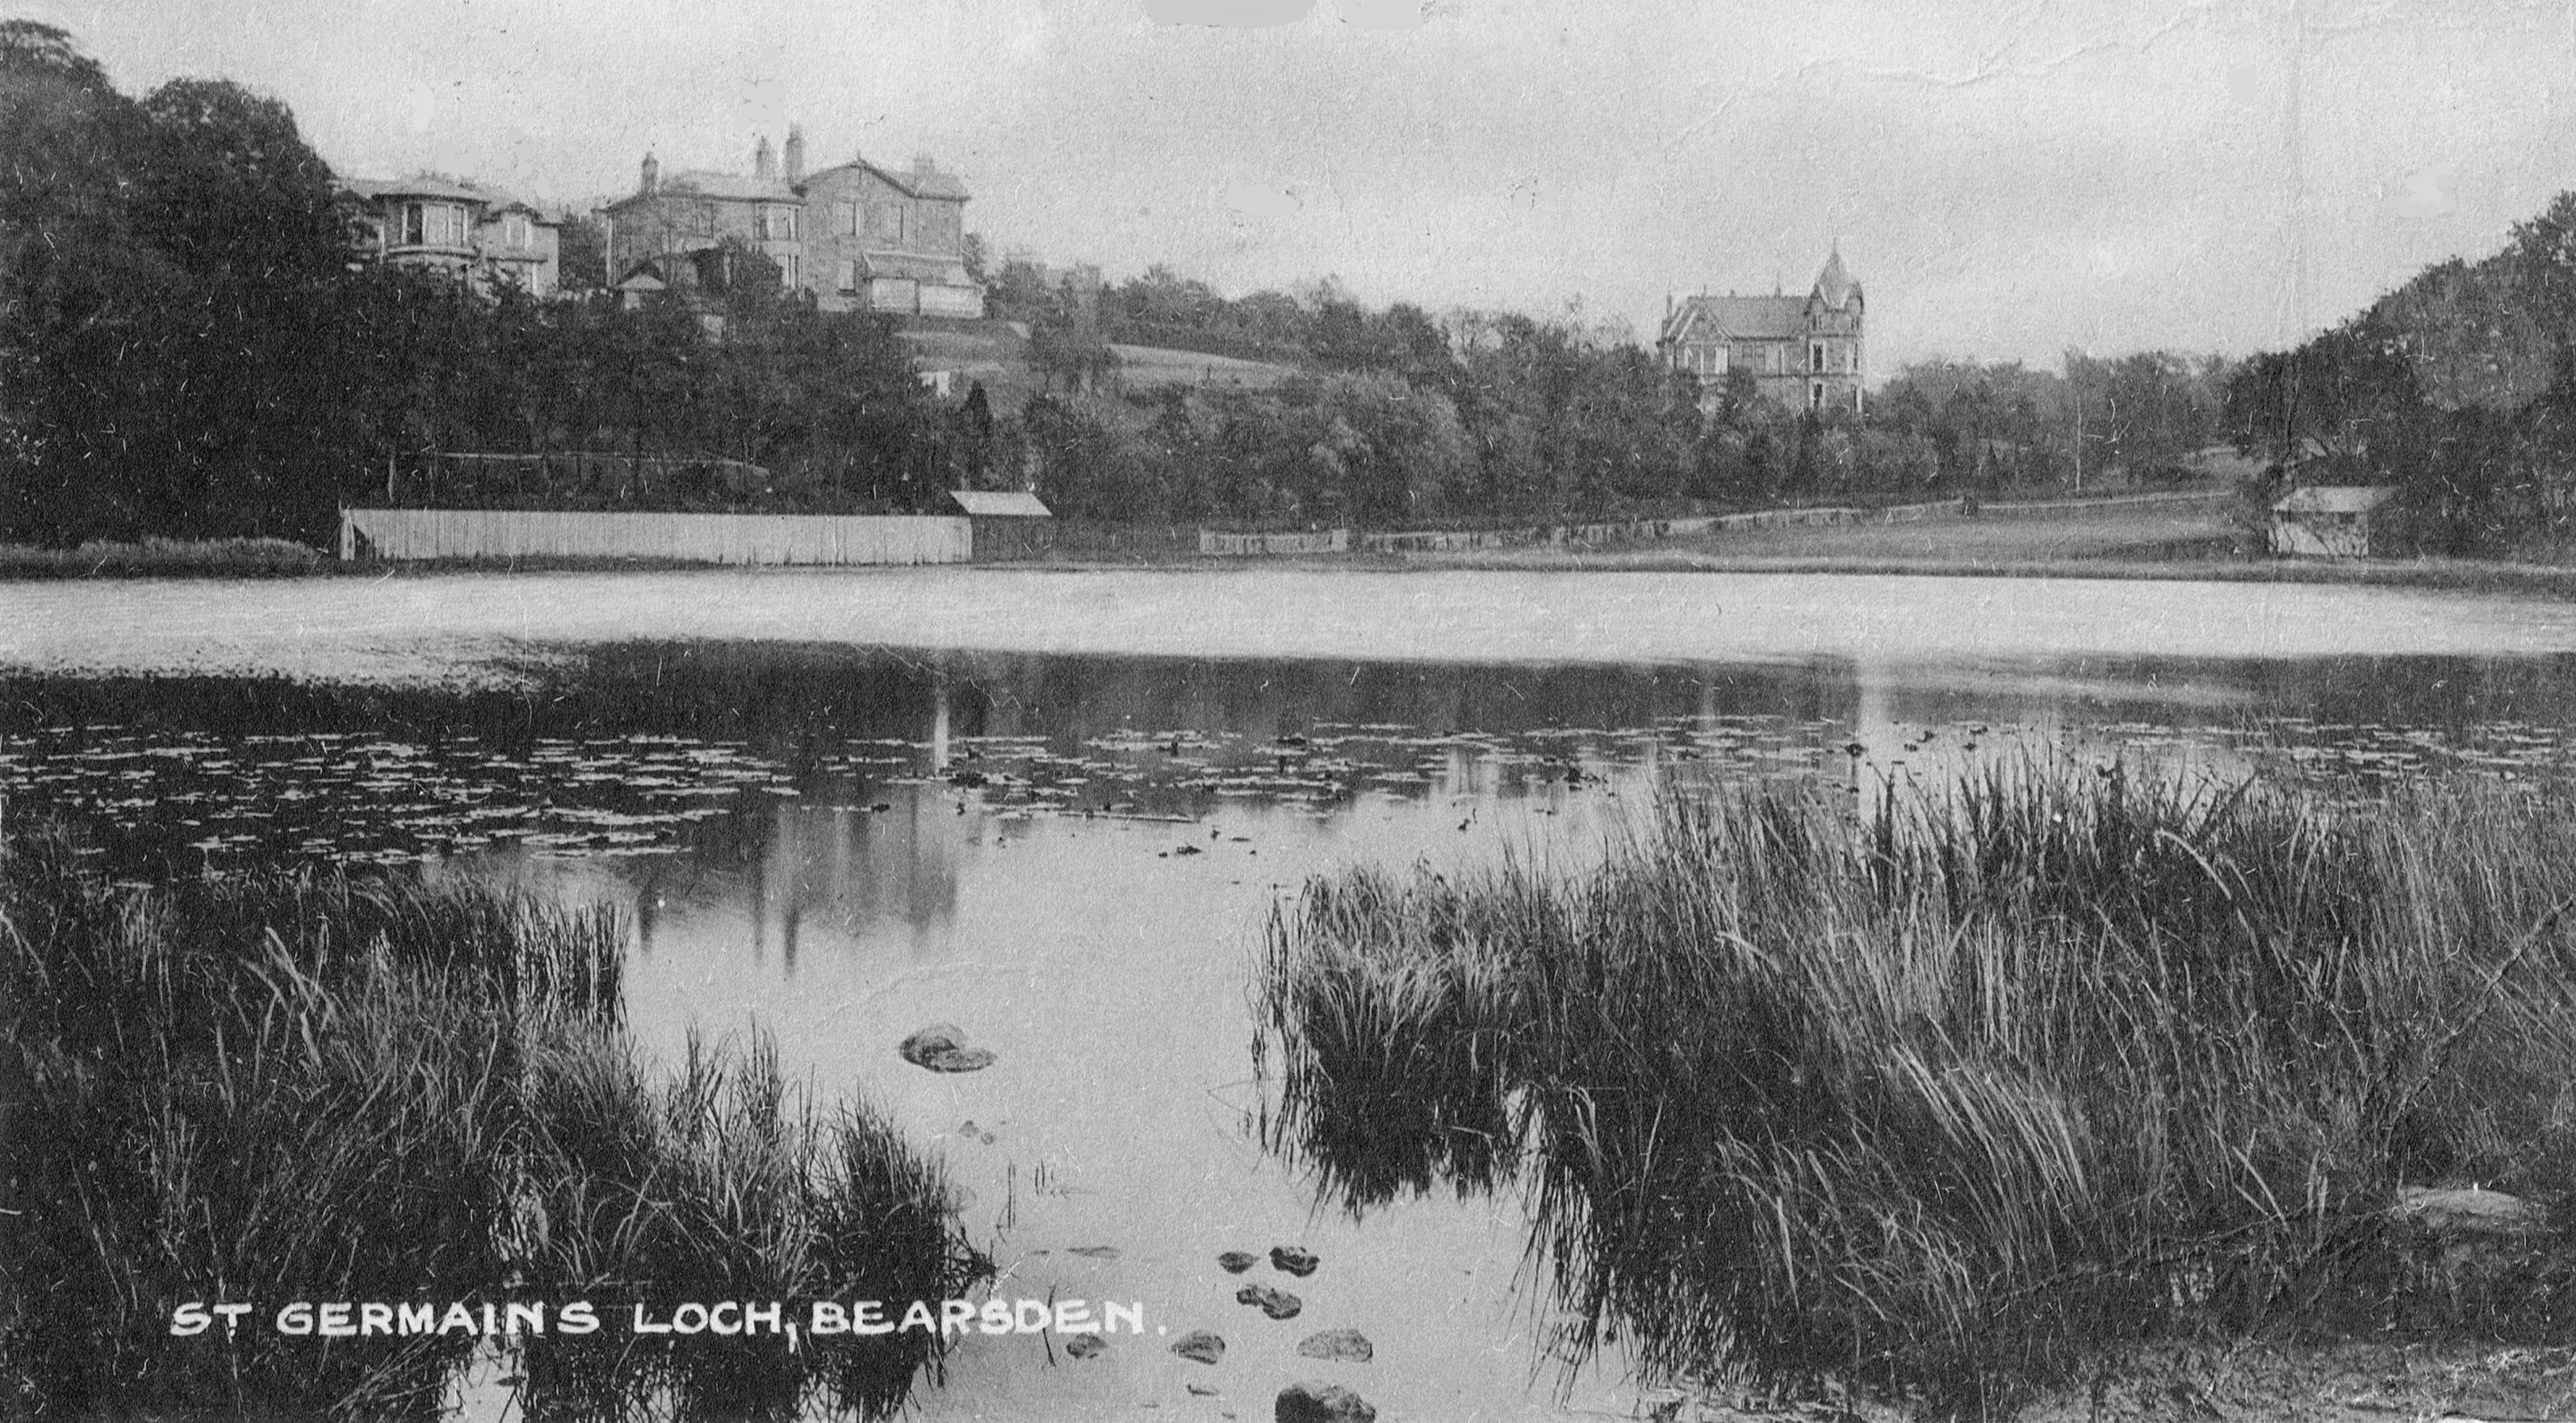 Old Postcard of St.Germain's Loch in Bearsden